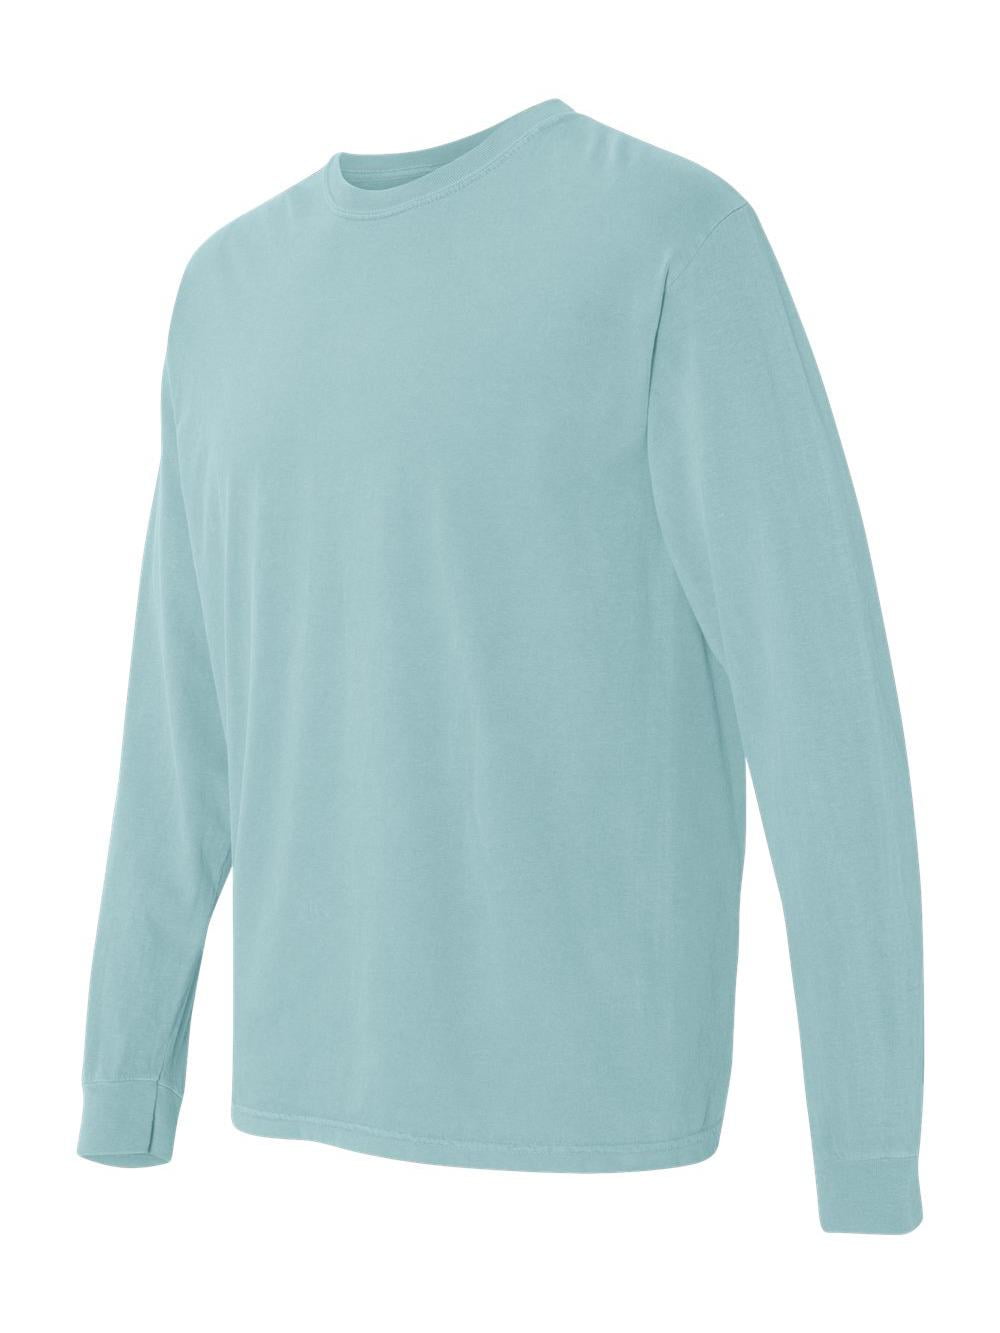 Garment Dyed Heavyweight Ringspun Long Sleeve T-Shirt - 6014 - Walmart.com